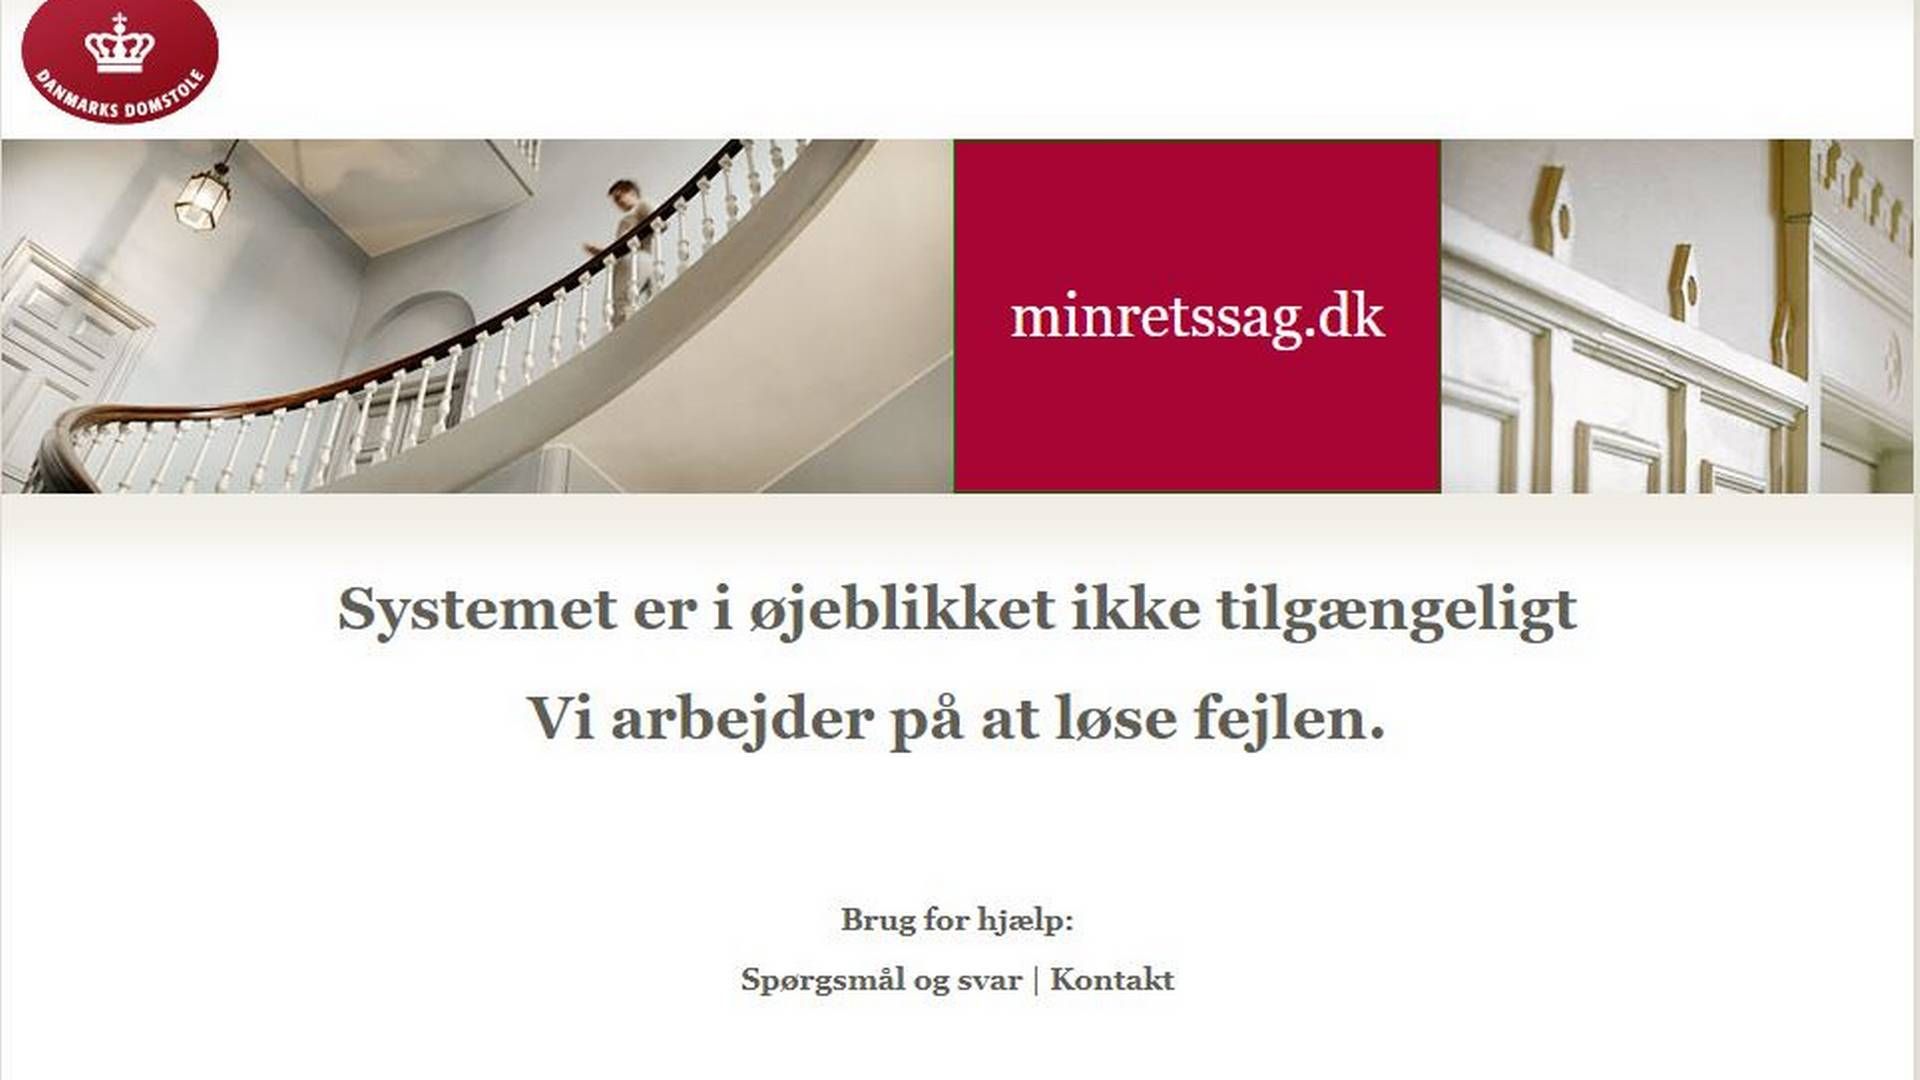 Advokater, der fredag klikkede sig ind på minretssag.dk, blev mødt af denne besked.